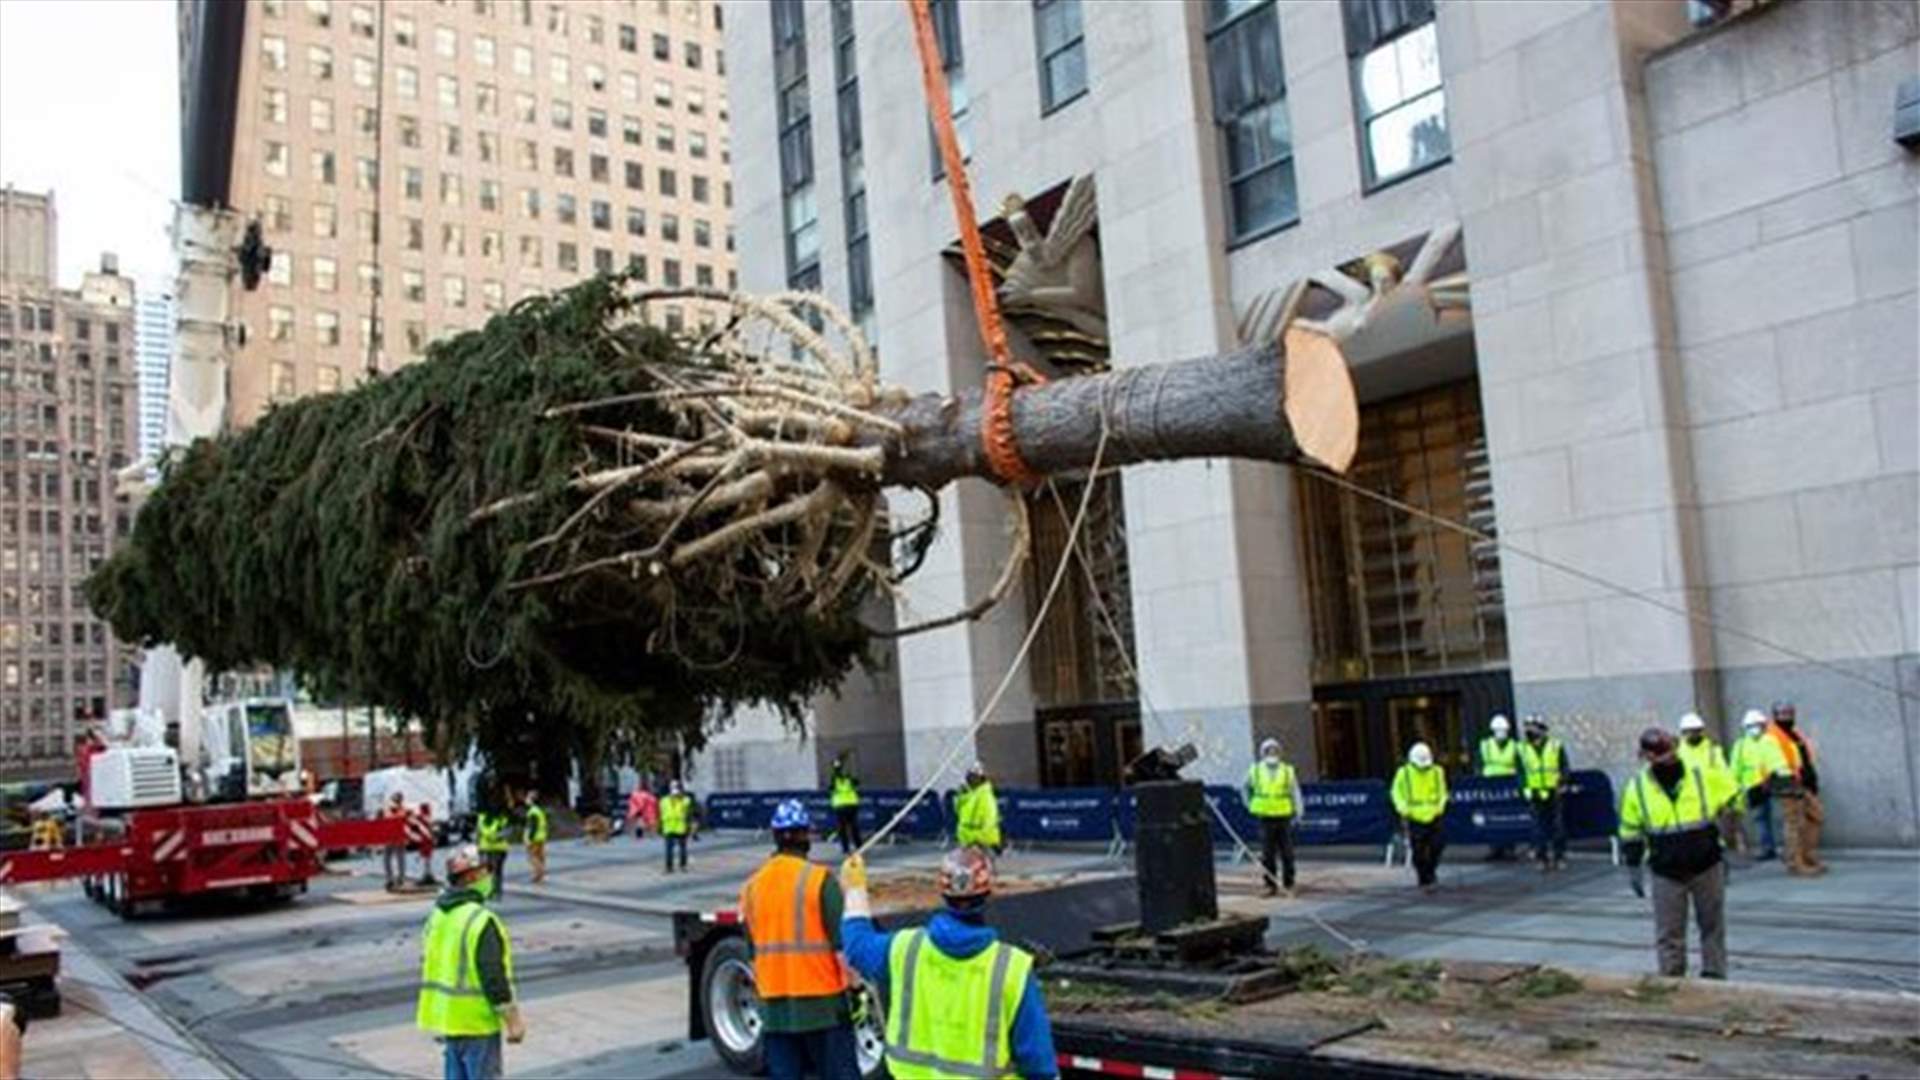 شجرة عيد الميلاد العملاقة في نيويورك تشيع البهجة بالمدينة بزمن كورونا